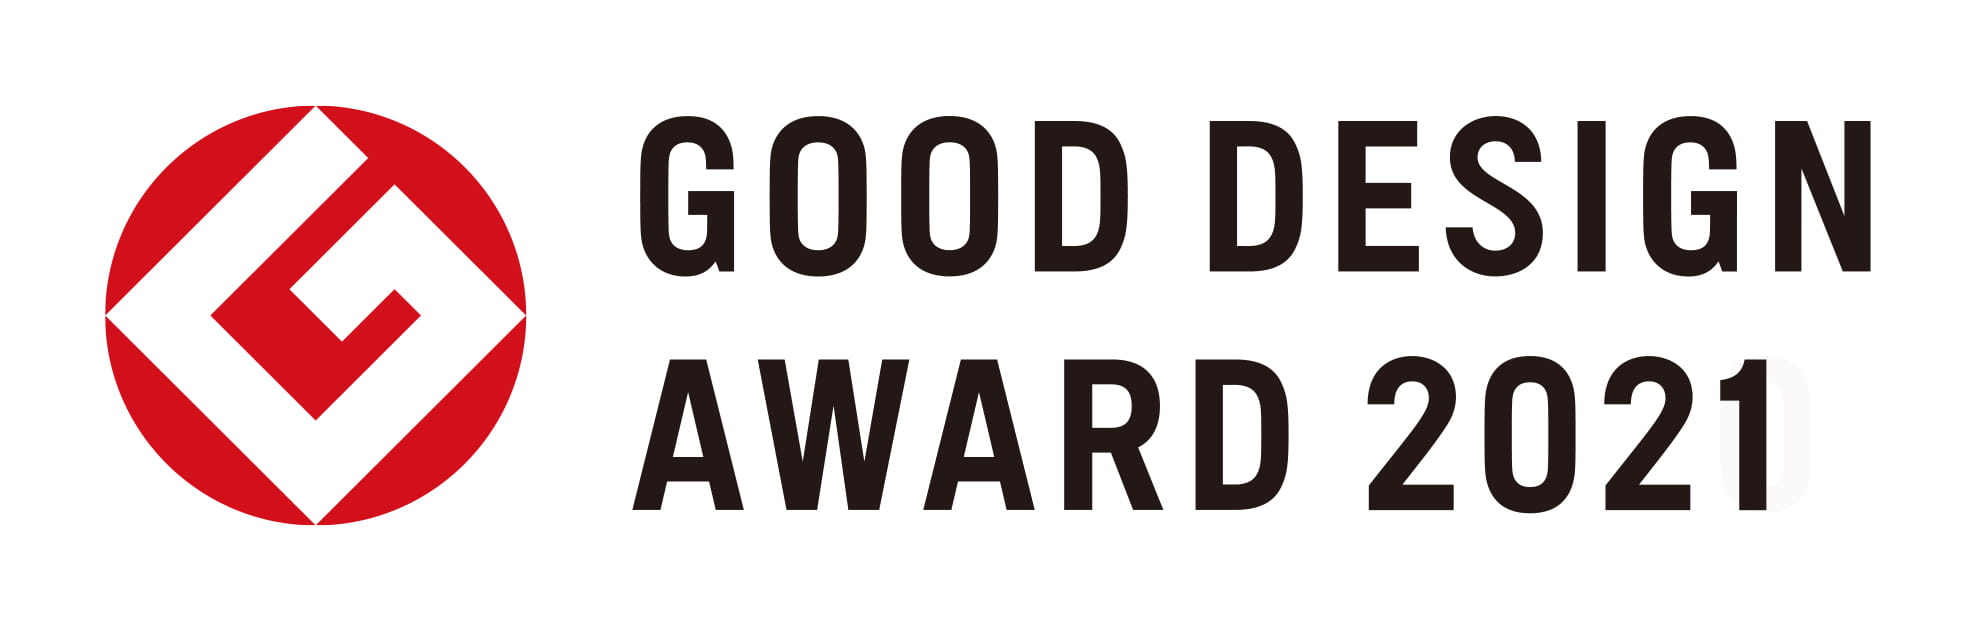 Good Design Award 2021